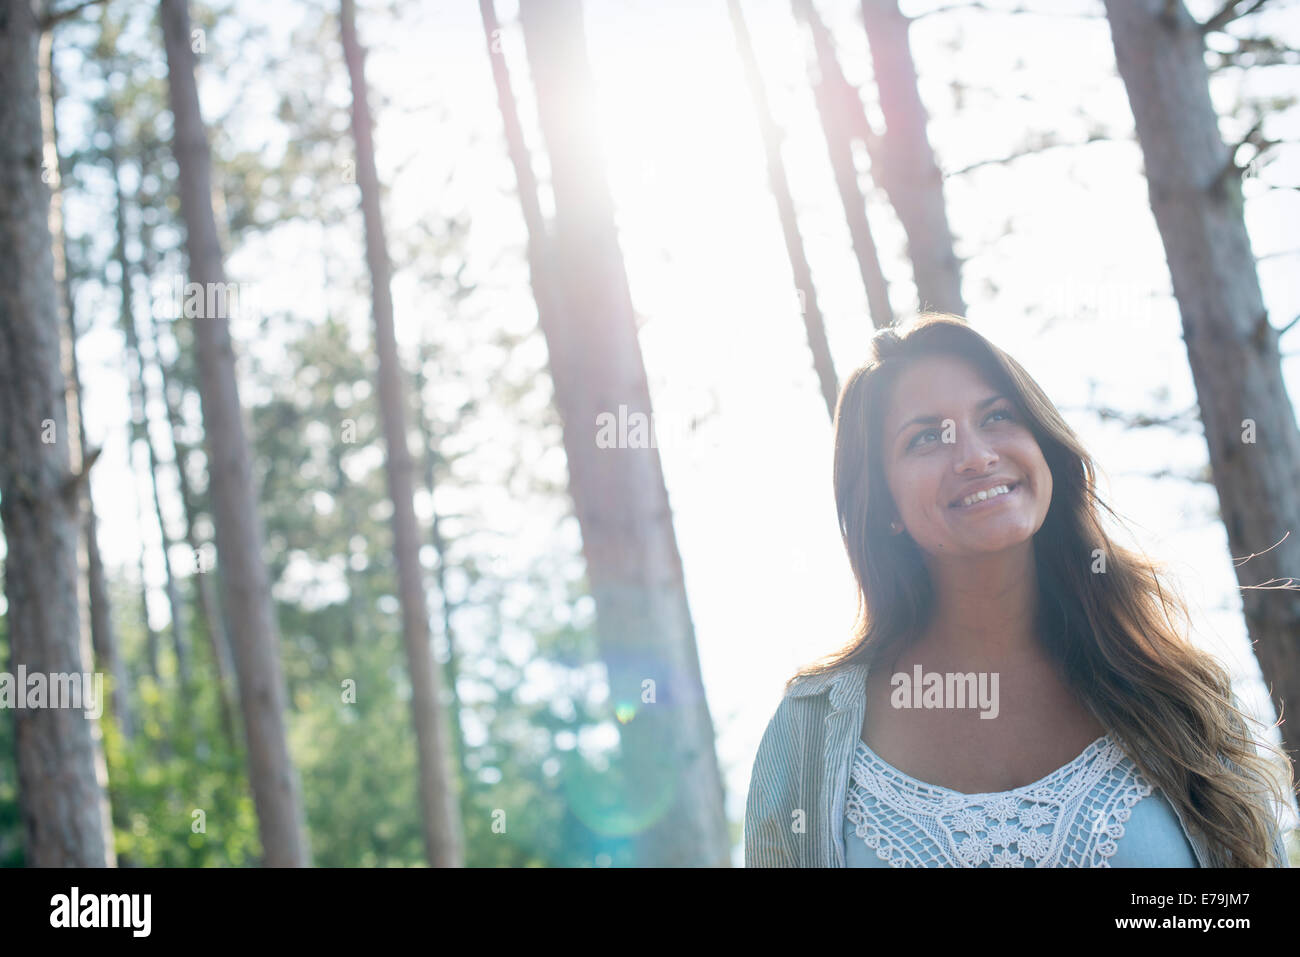 Eine Frau, die einen gemütlichen Spaziergang in einem Wald zu genießen. Stockfoto